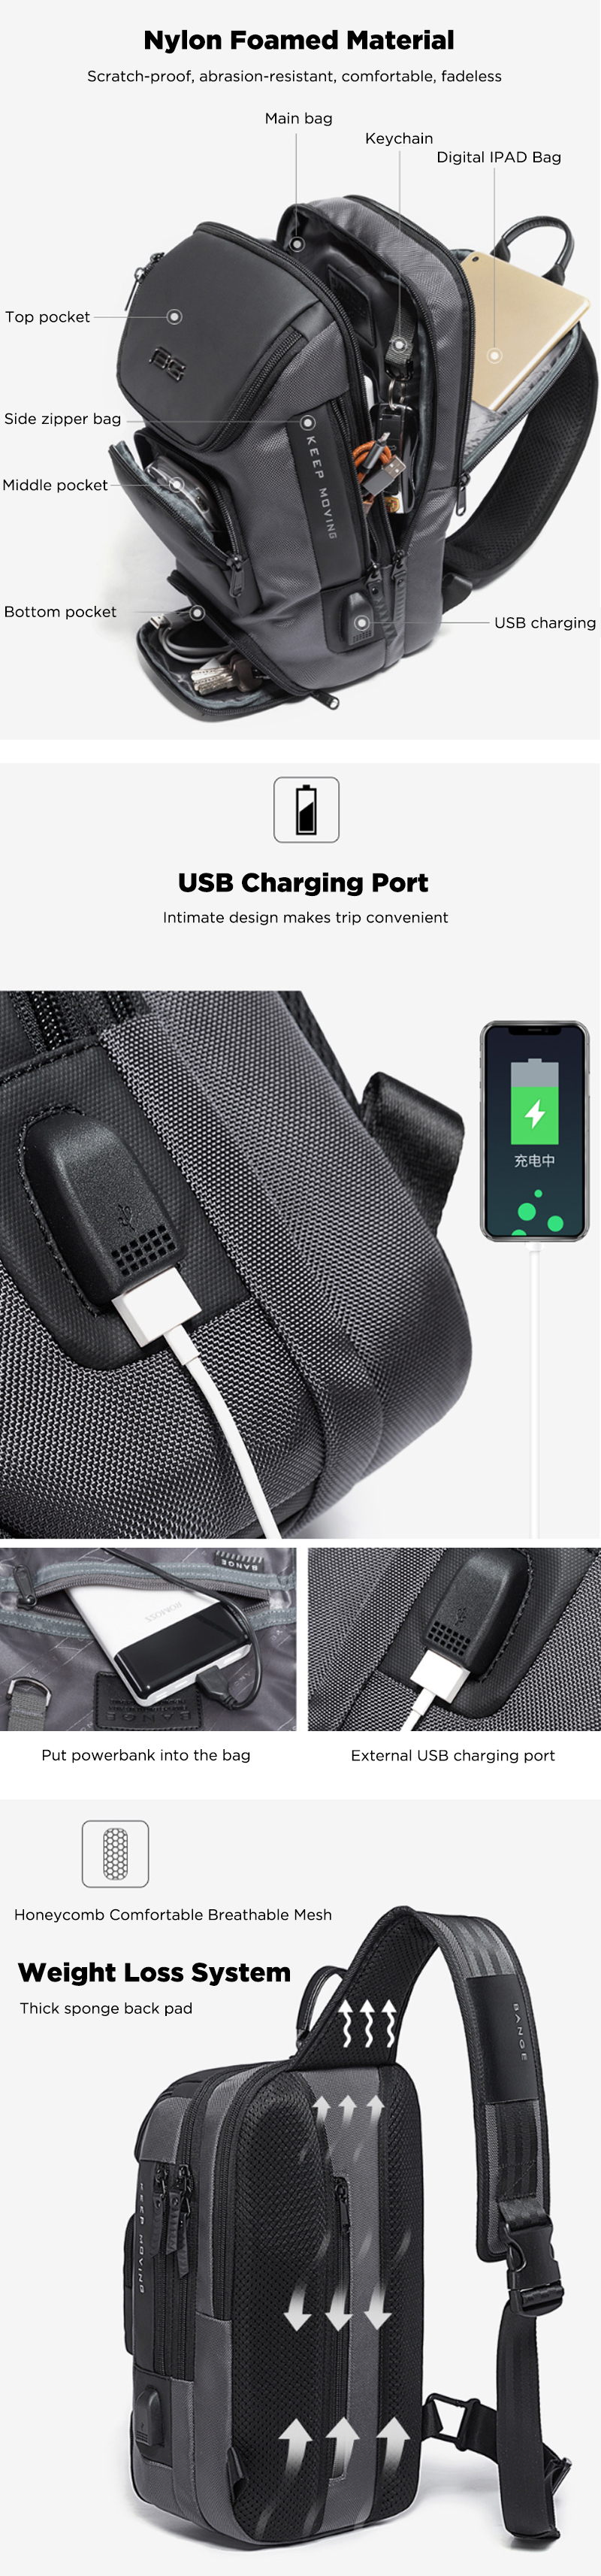 BANGE-BG-7086-8L-Men-Sling-Bag-with-USB-Charging-Port-Oxford-Cloth-Chest-Shoulder-Crossbody-Bag-Oxfo-1604616-2